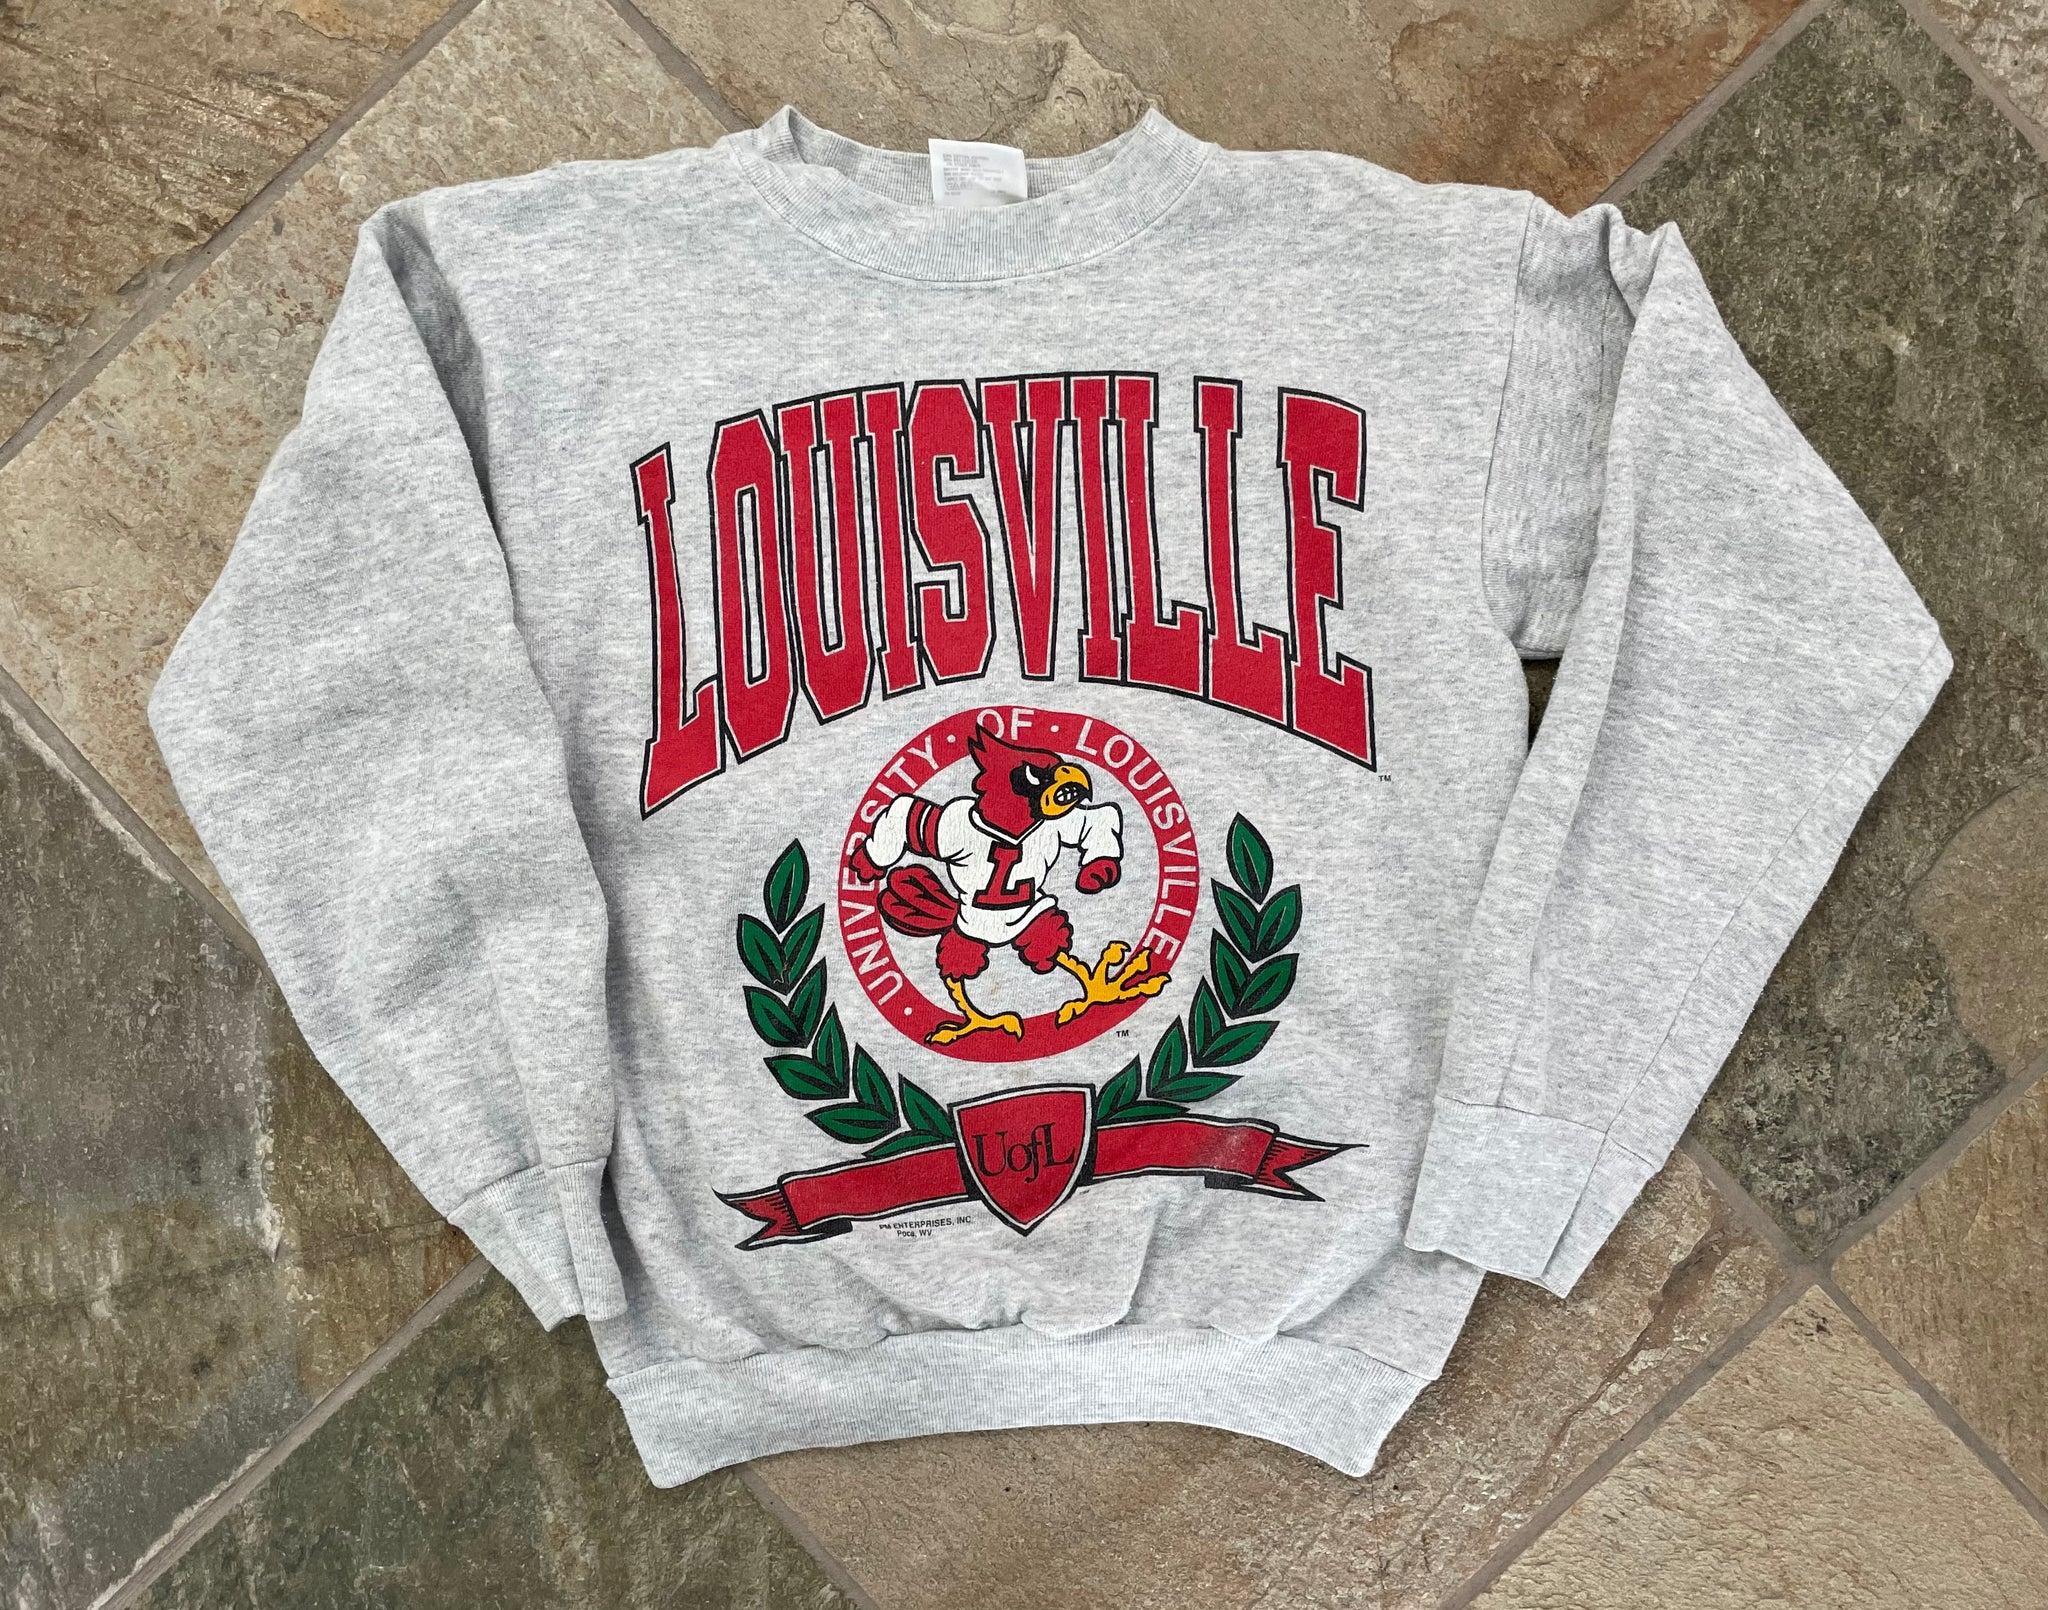 Vintage Louisville Cardinals College Sweatshirt, Size Medium